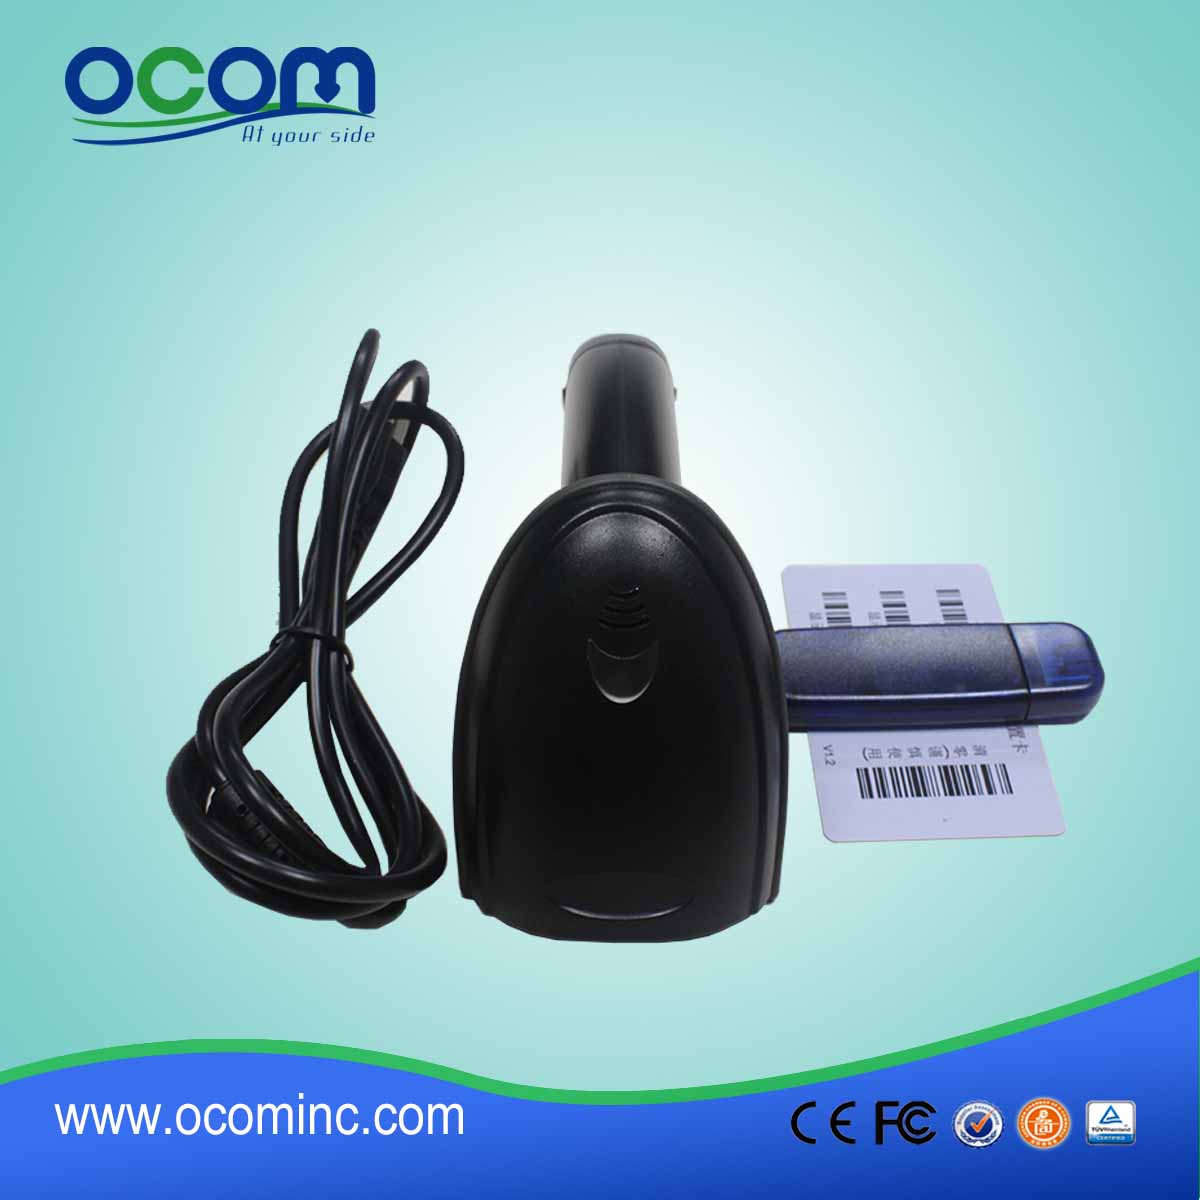 ОКБС-ла11 с дешевой автоматической лазерной портативной USB-сканером